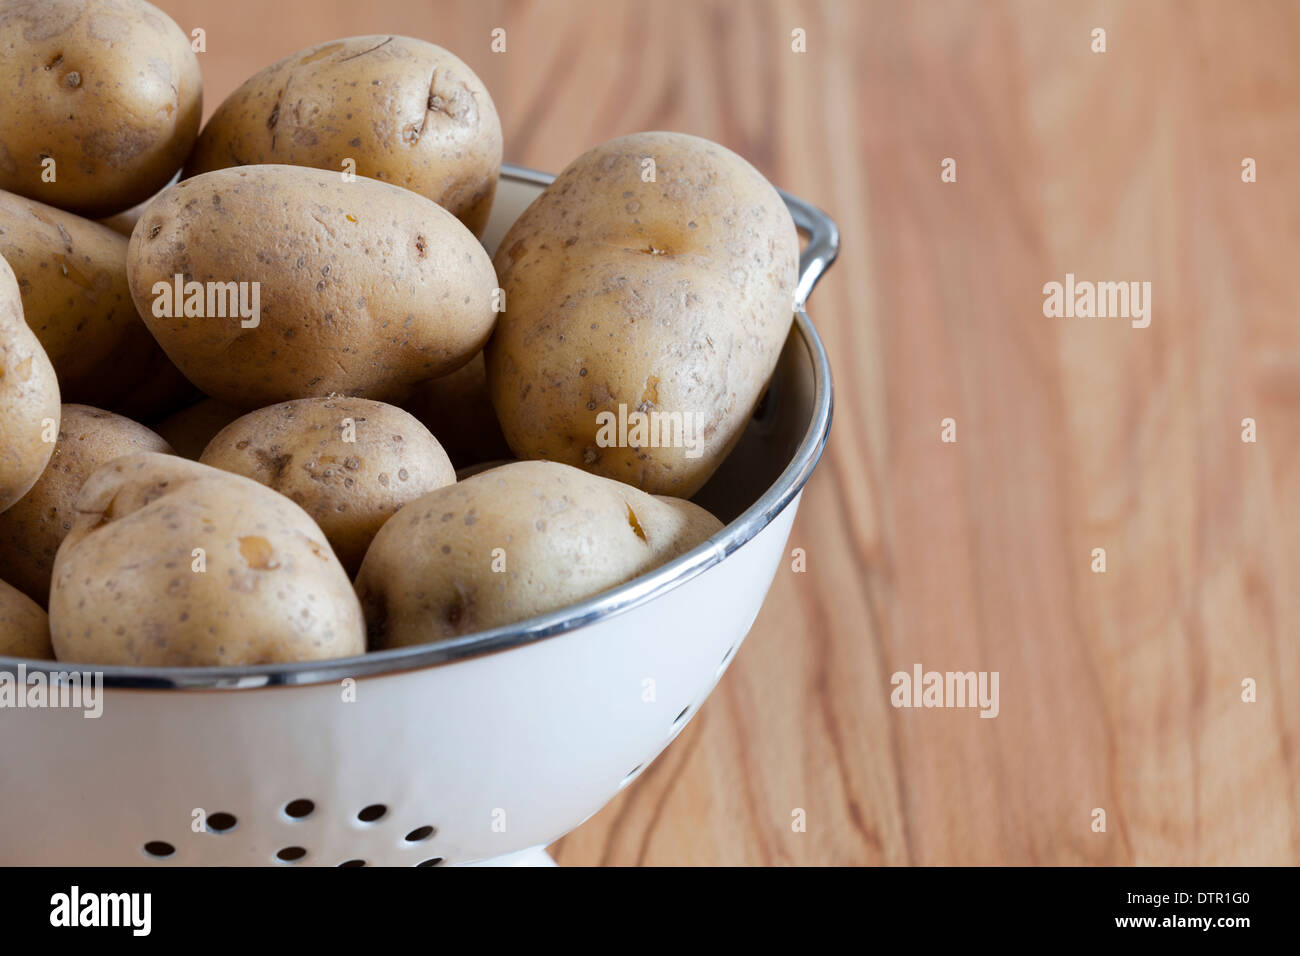 Close up de matières premières pommes de terre dans une passoire, avec l'exemplaire de l'espace sur le côté droit de l'image Banque D'Images